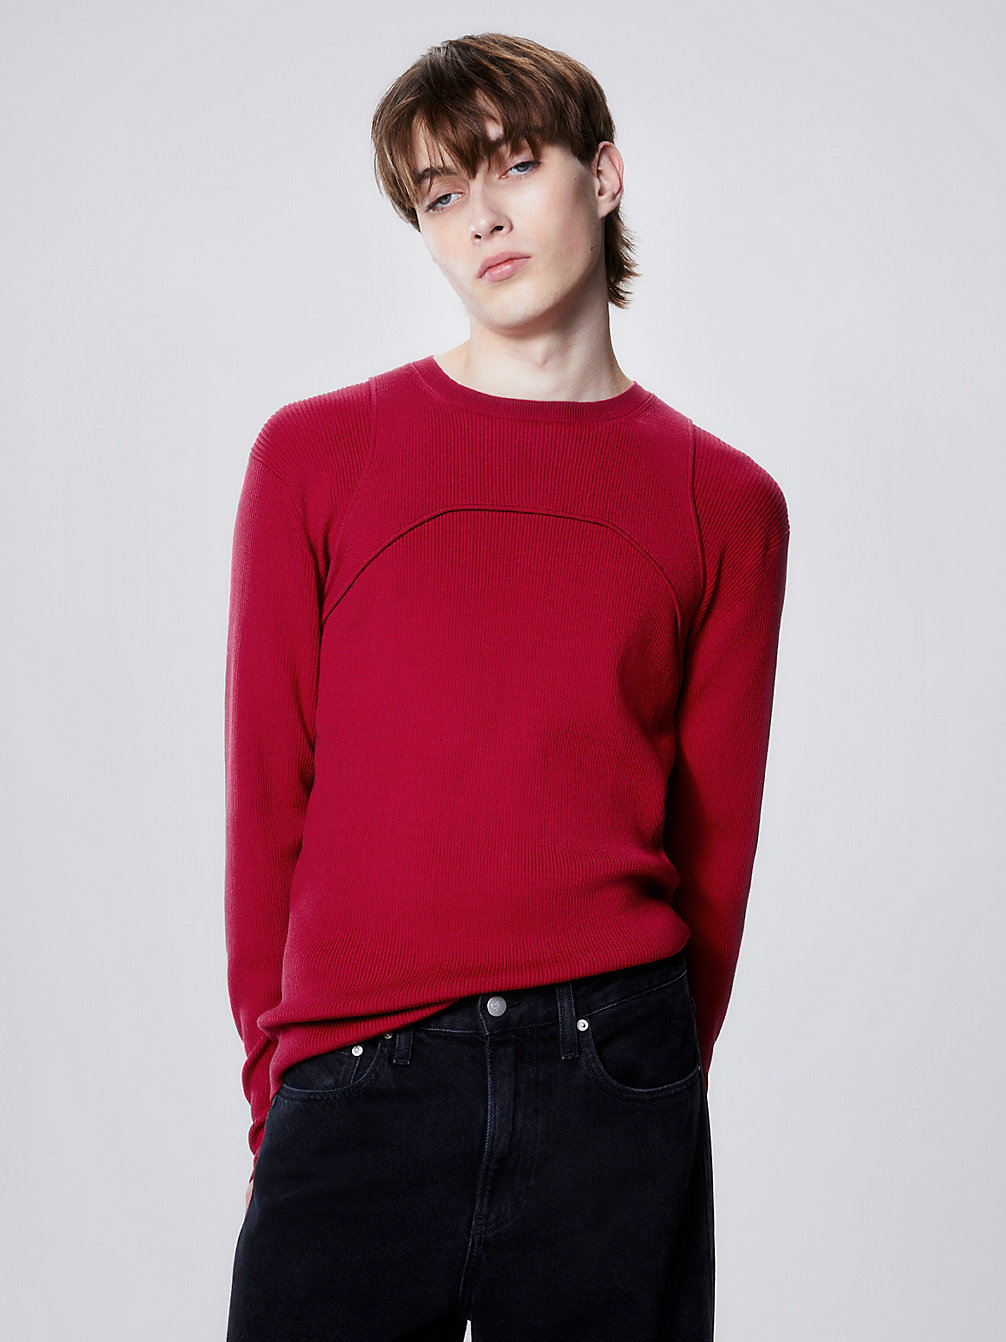 RADIANT RED Schmaler Pullover Mit Harness-Detail undefined Herren Calvin Klein